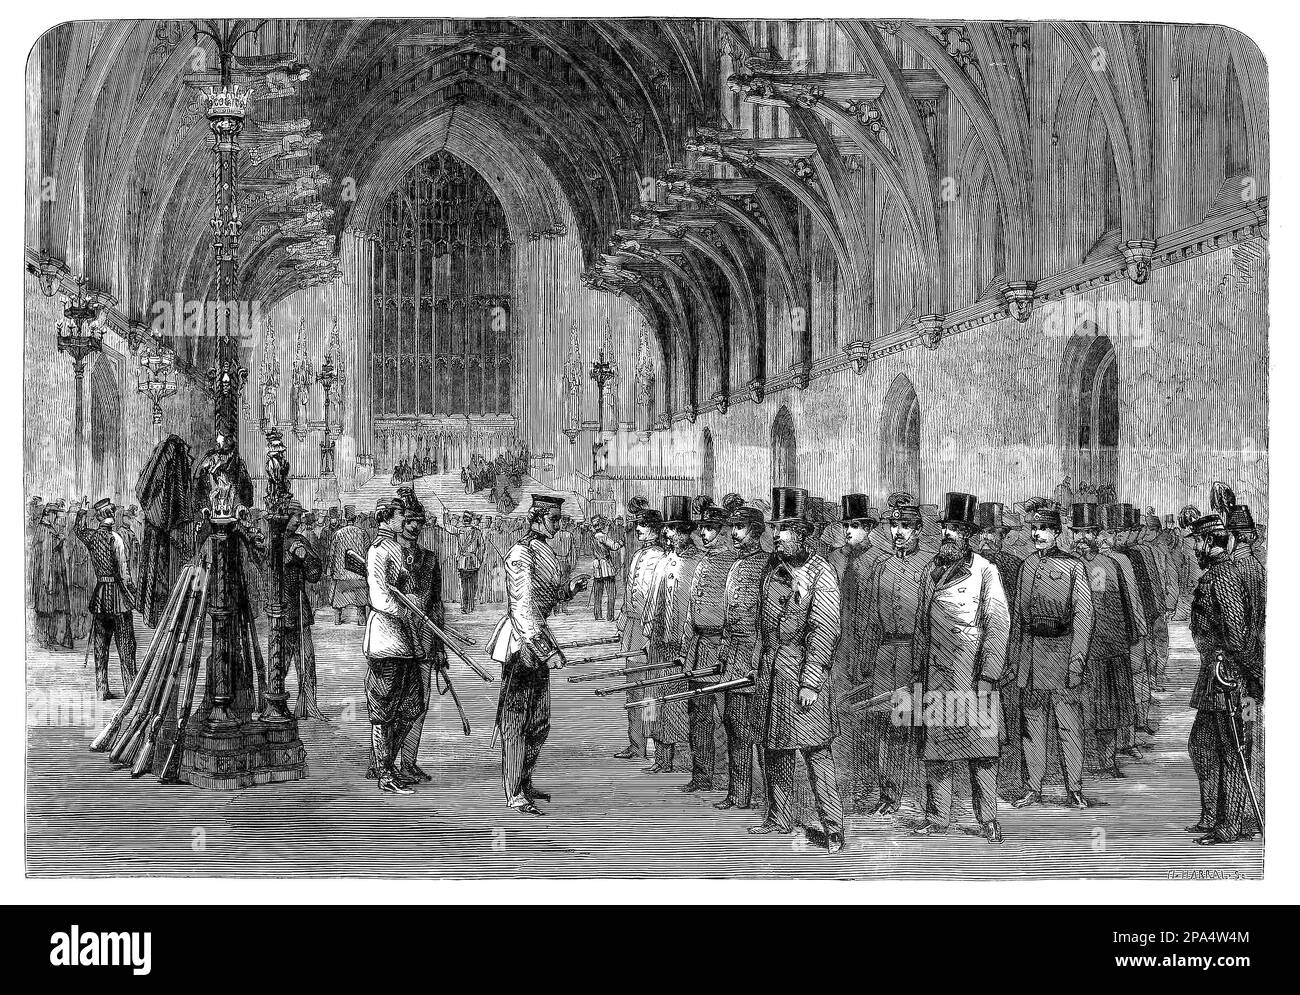 Das Rifle Corps, das in der Westminster Hall, der Westminster Hall, dem ältesten Teil des Palastes von Westminster, in London, England, stattfindet und 1097 von König William II. („William Rufus“) errichtet wurde. Stockfoto